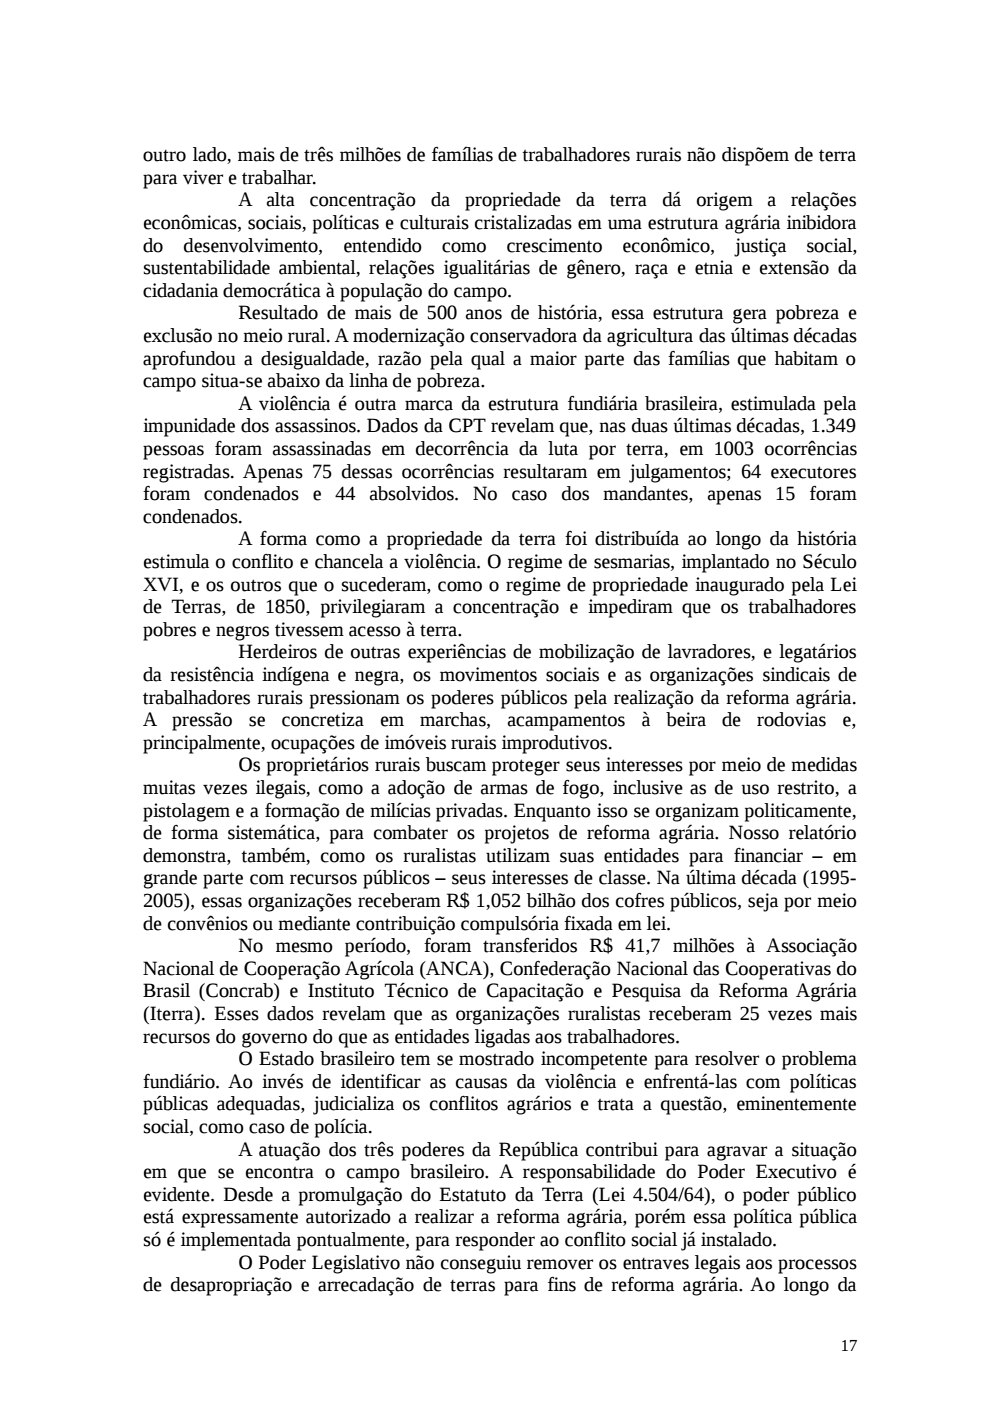 Page 17 from Relatório final da comissão